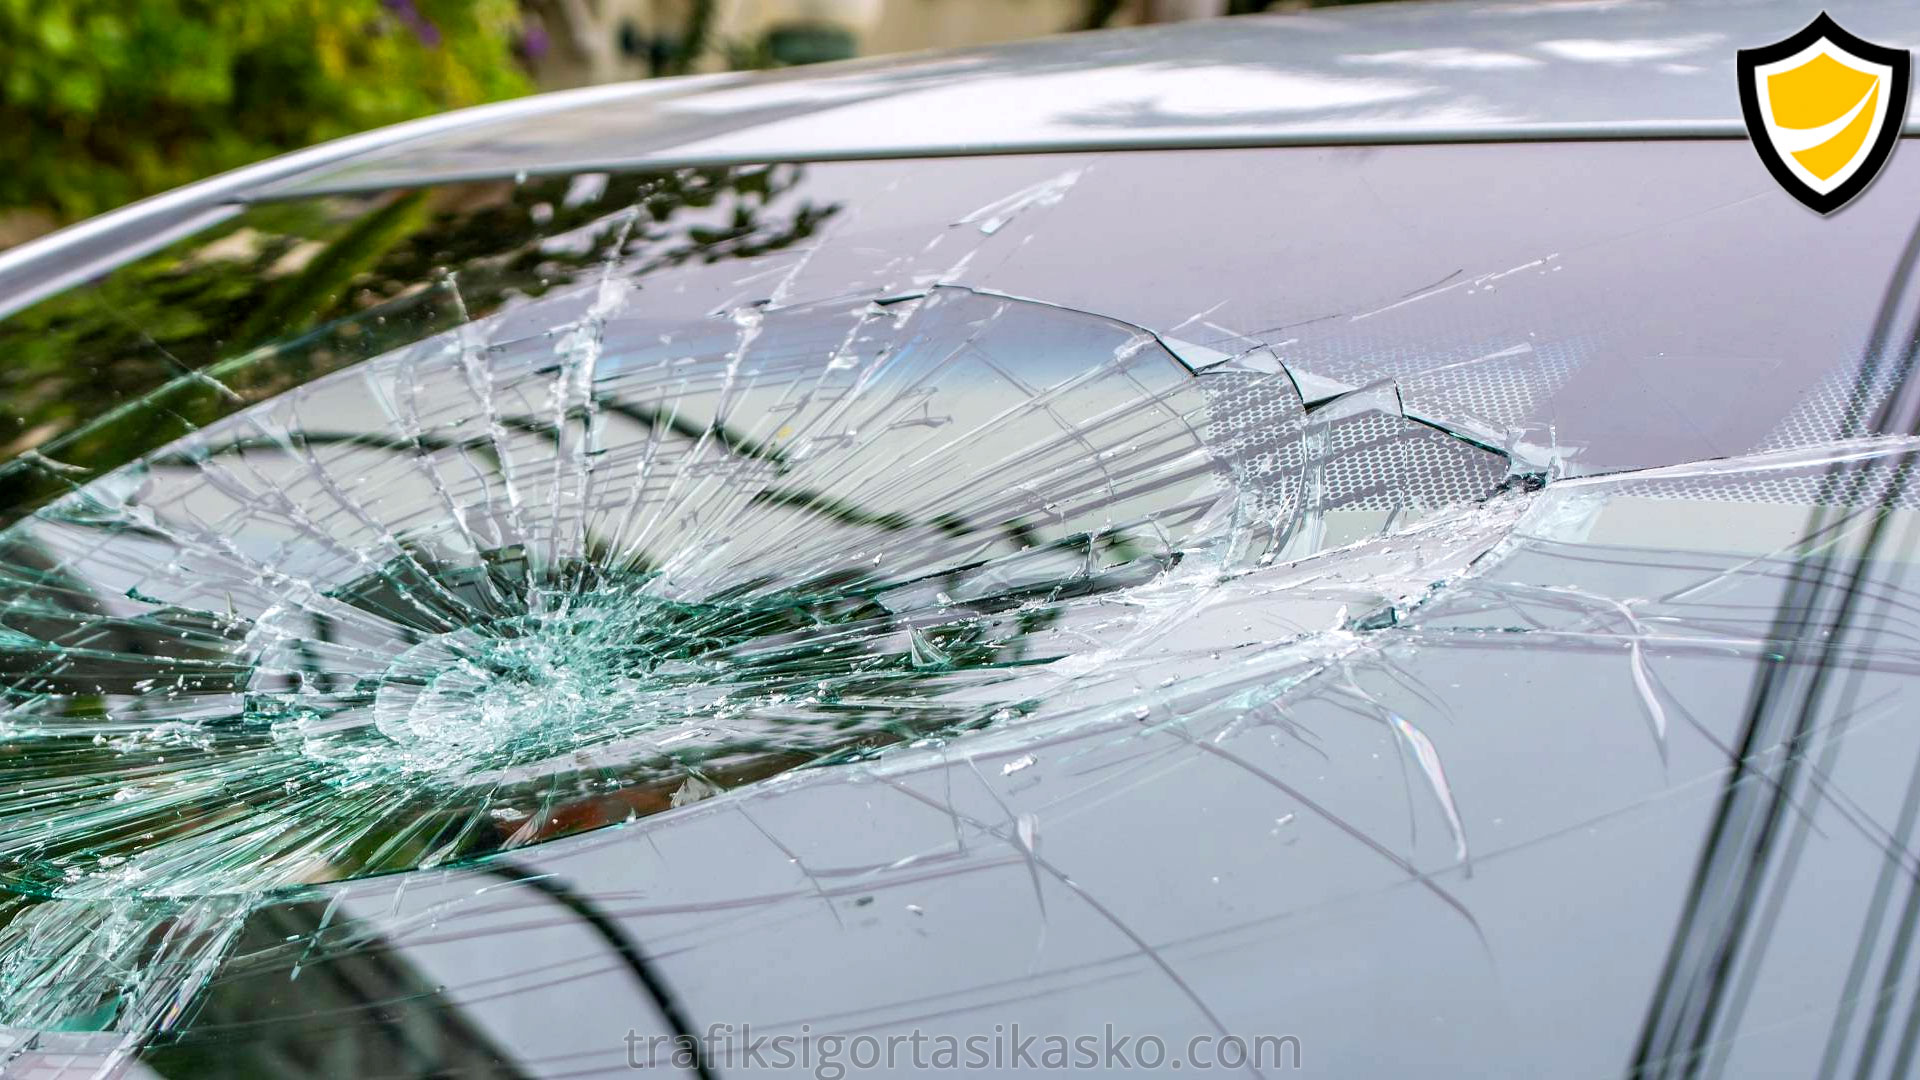 arabamın ön camı kırıldı, ön cam kırıldı, araba ön cam hasarı,